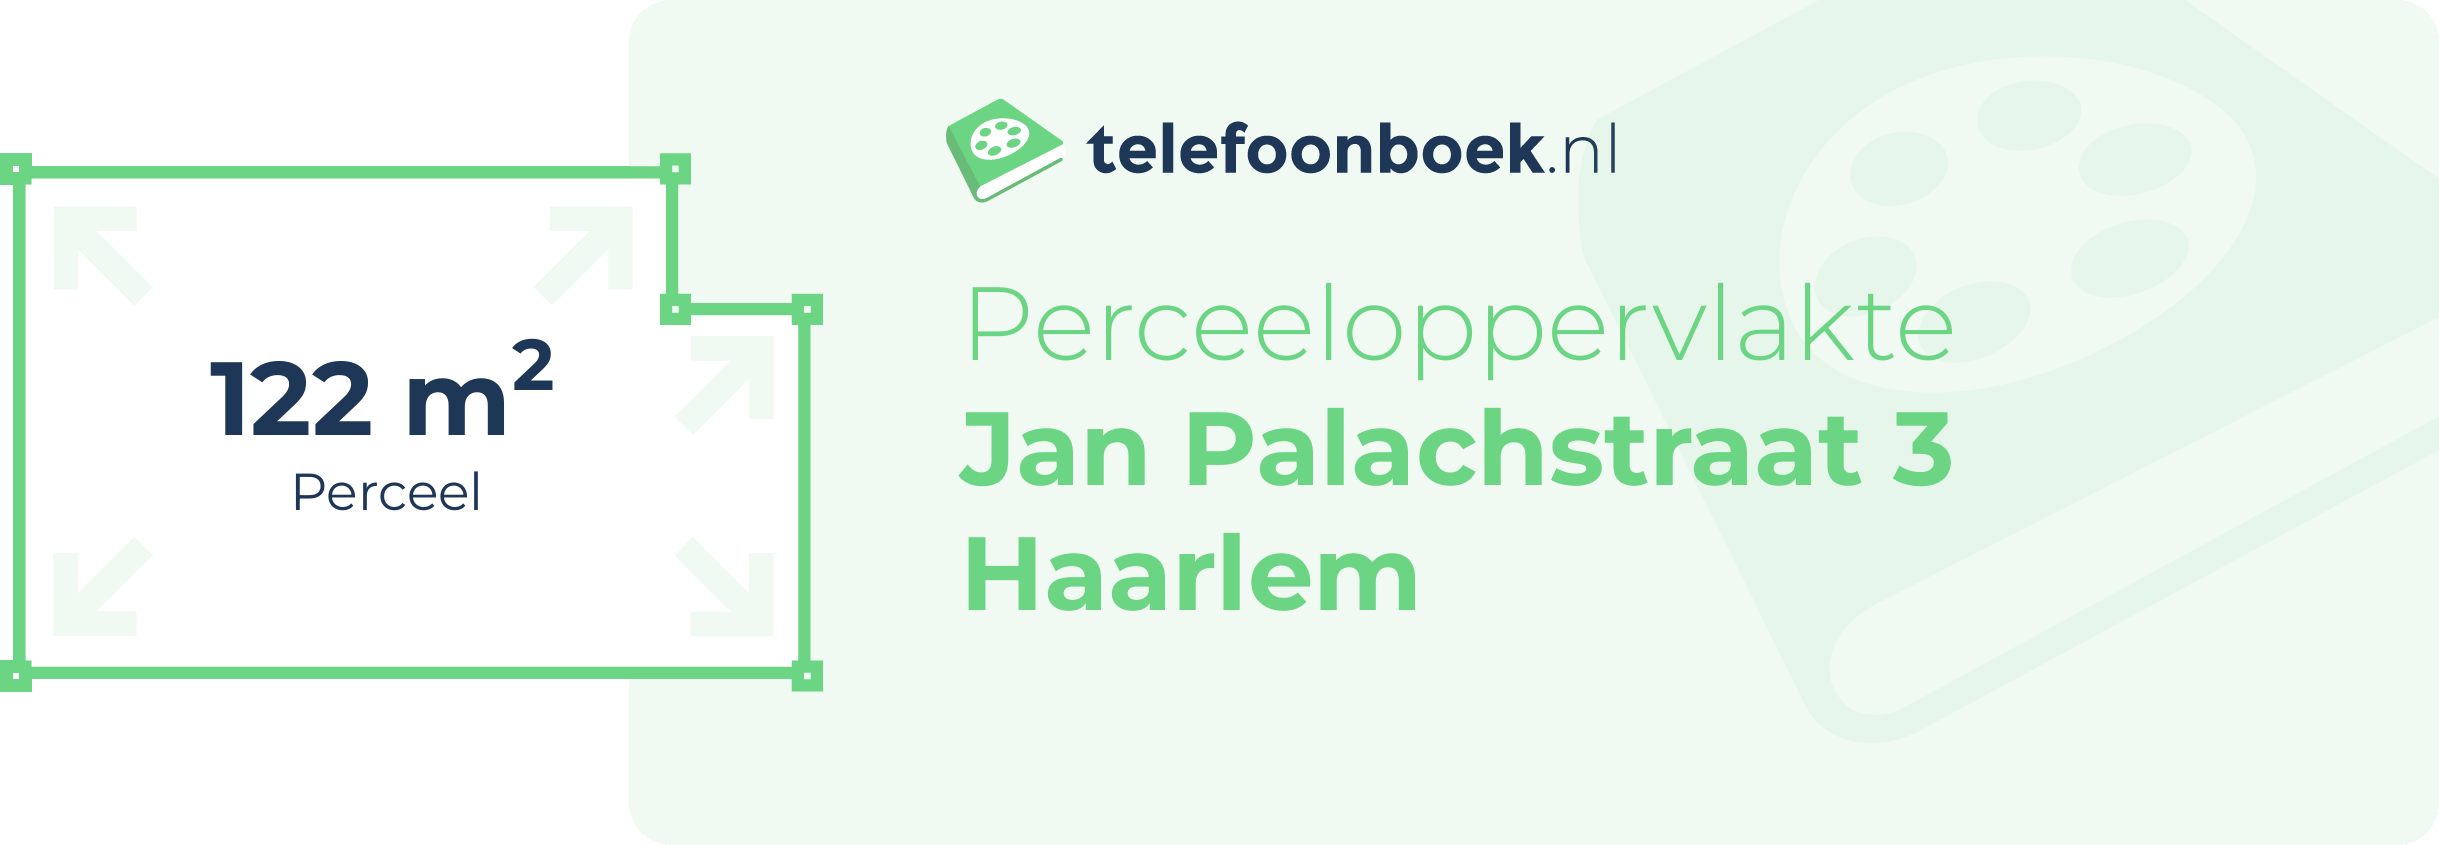 Perceeloppervlakte Jan Palachstraat 3 Haarlem